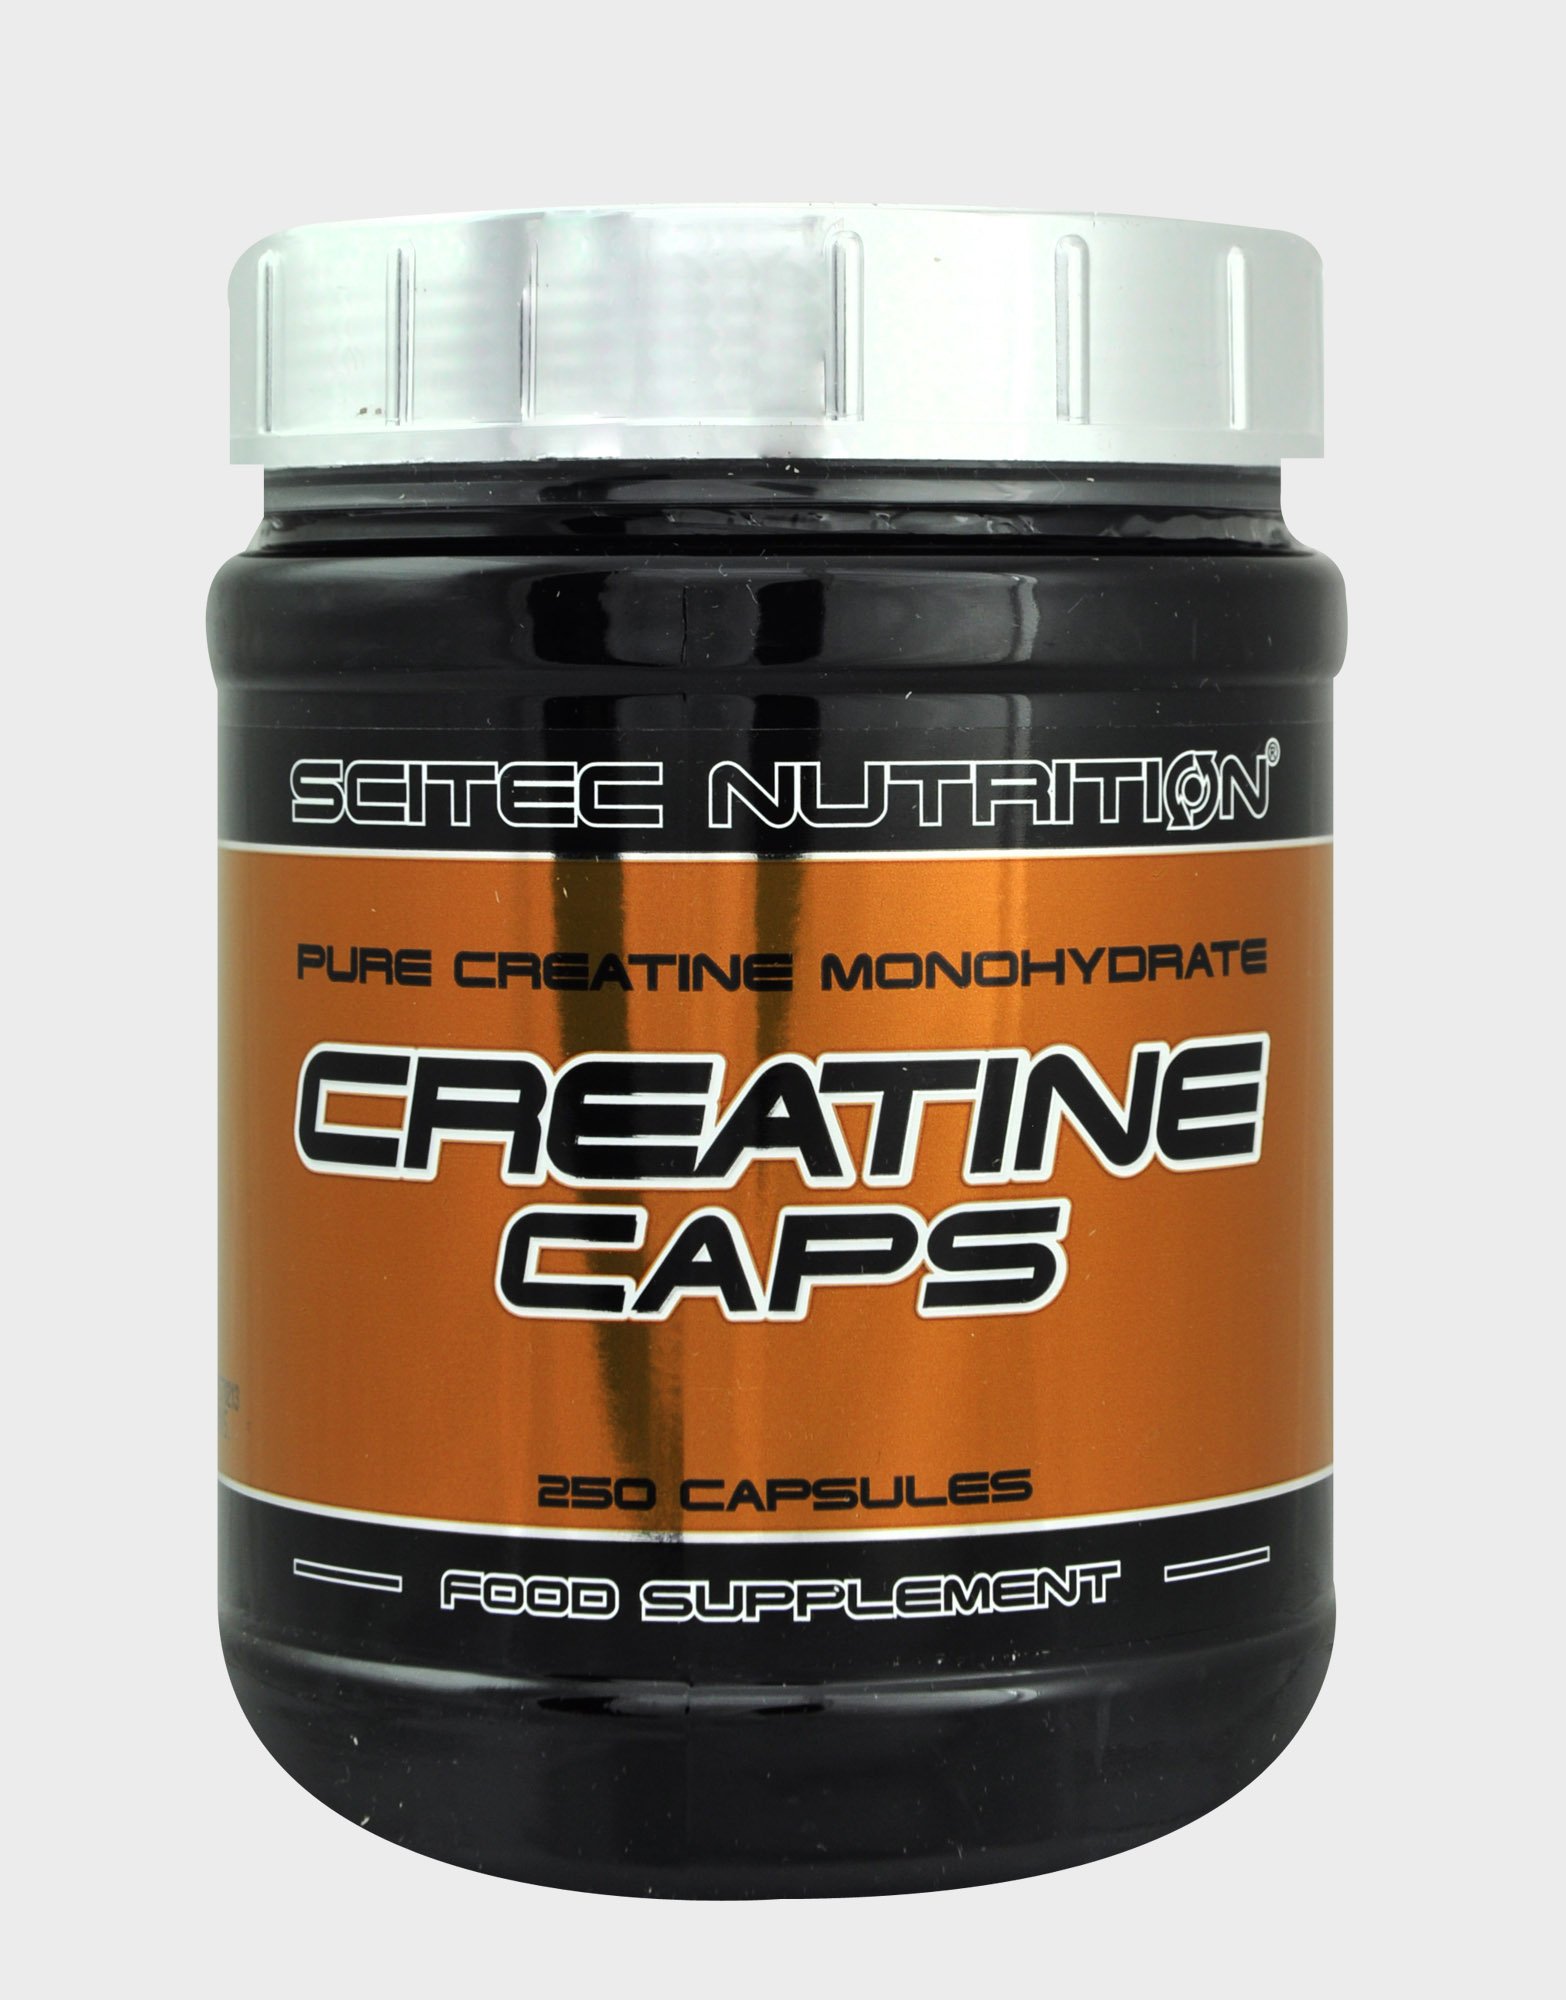 Creatine Caps, 250 шт, Scitec Nutrition. Креатин моногидрат. Набор массы Энергия и выносливость Увеличение силы 